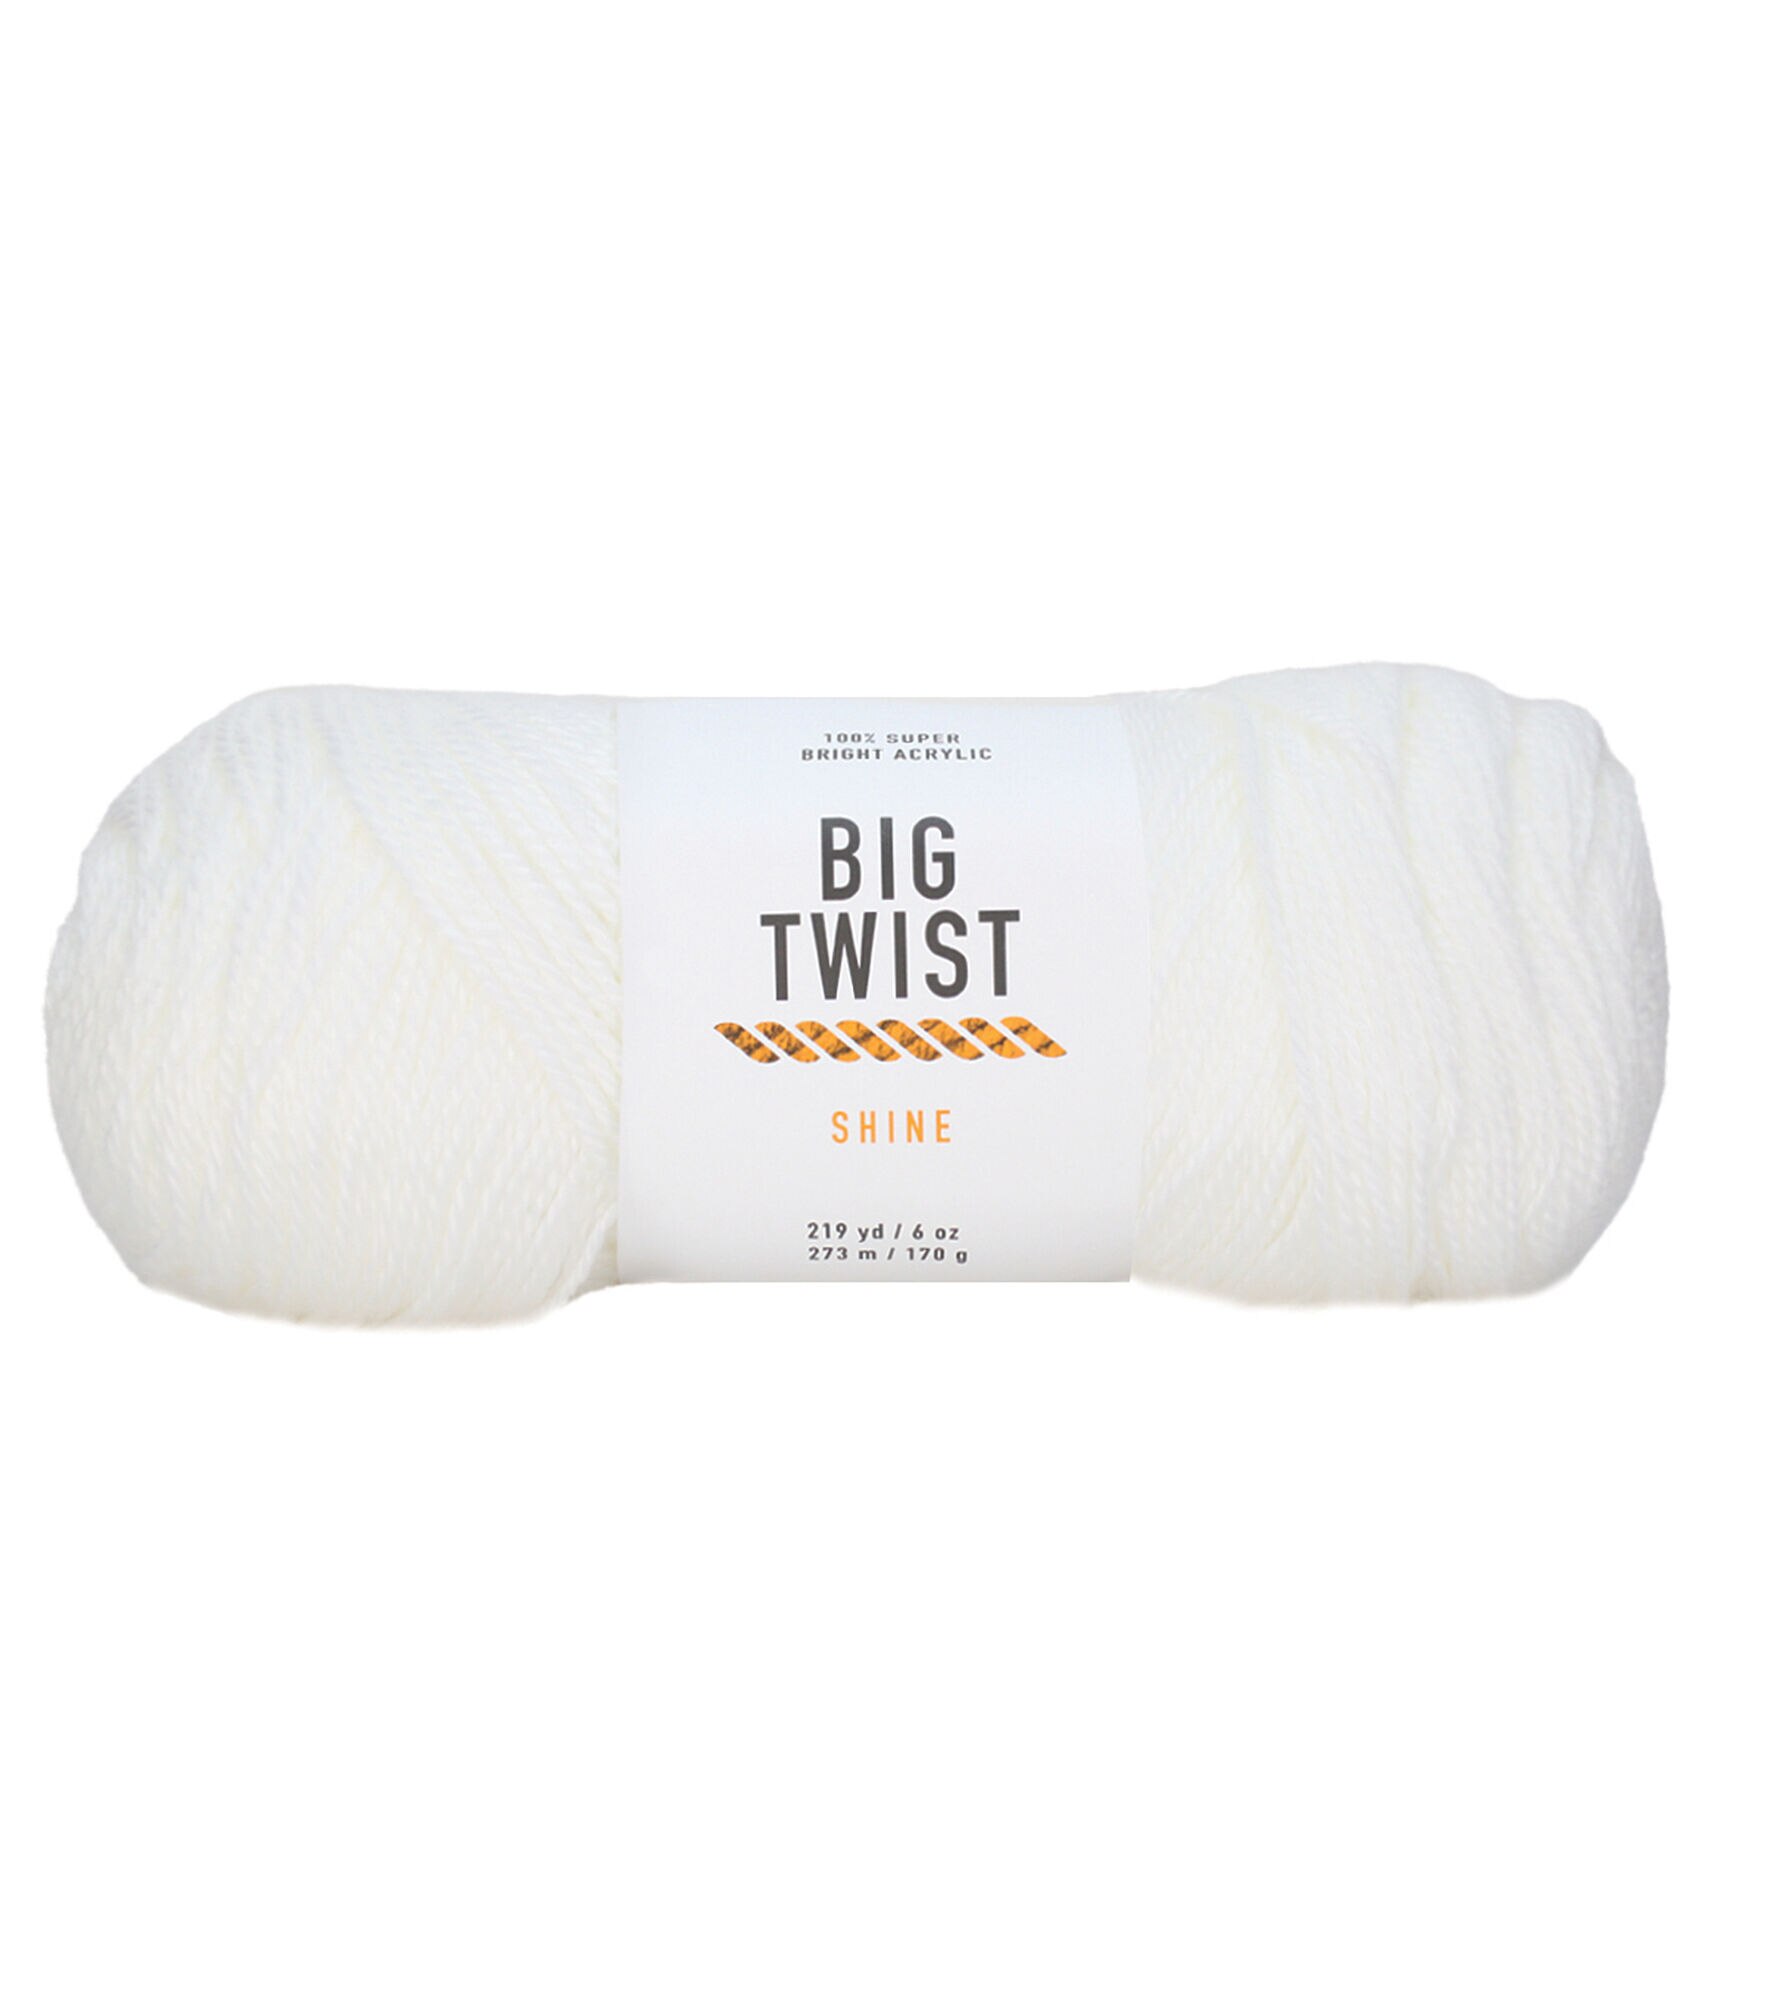 2oz Medium Weight Cotton Blend 107yd Yarn by Big Twist by Big Twist